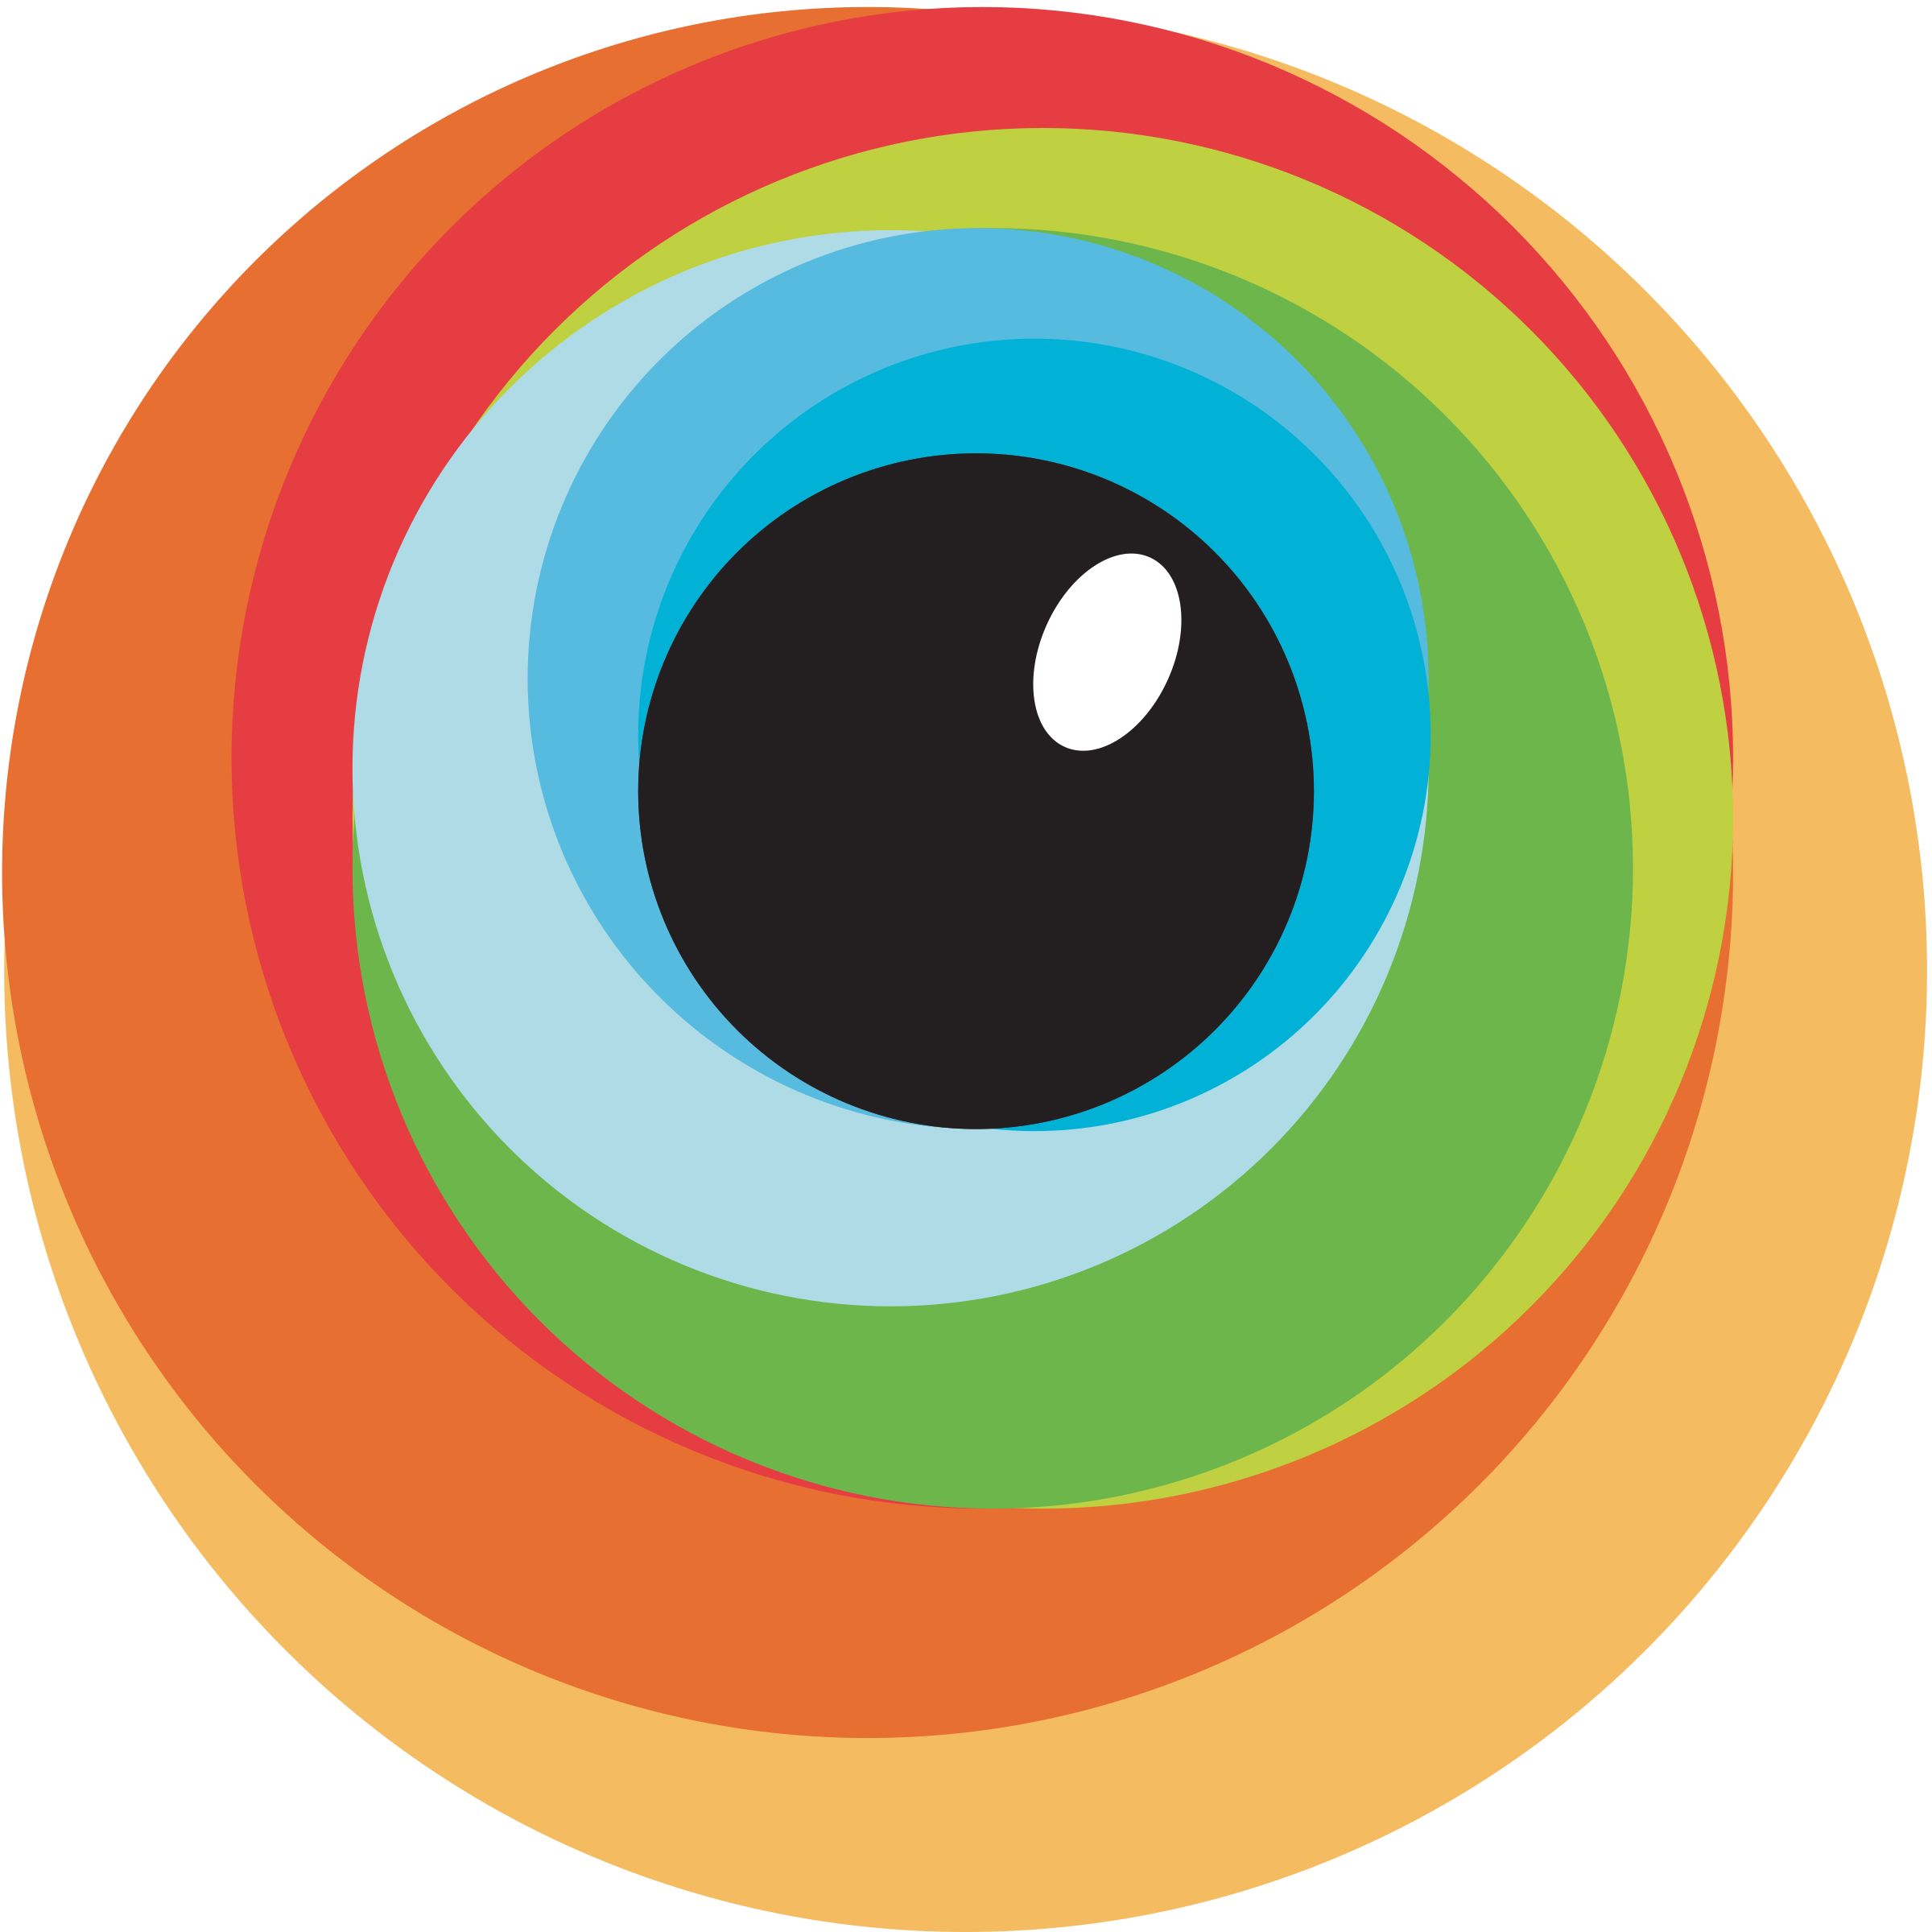 browserstack-logo-png-transparent